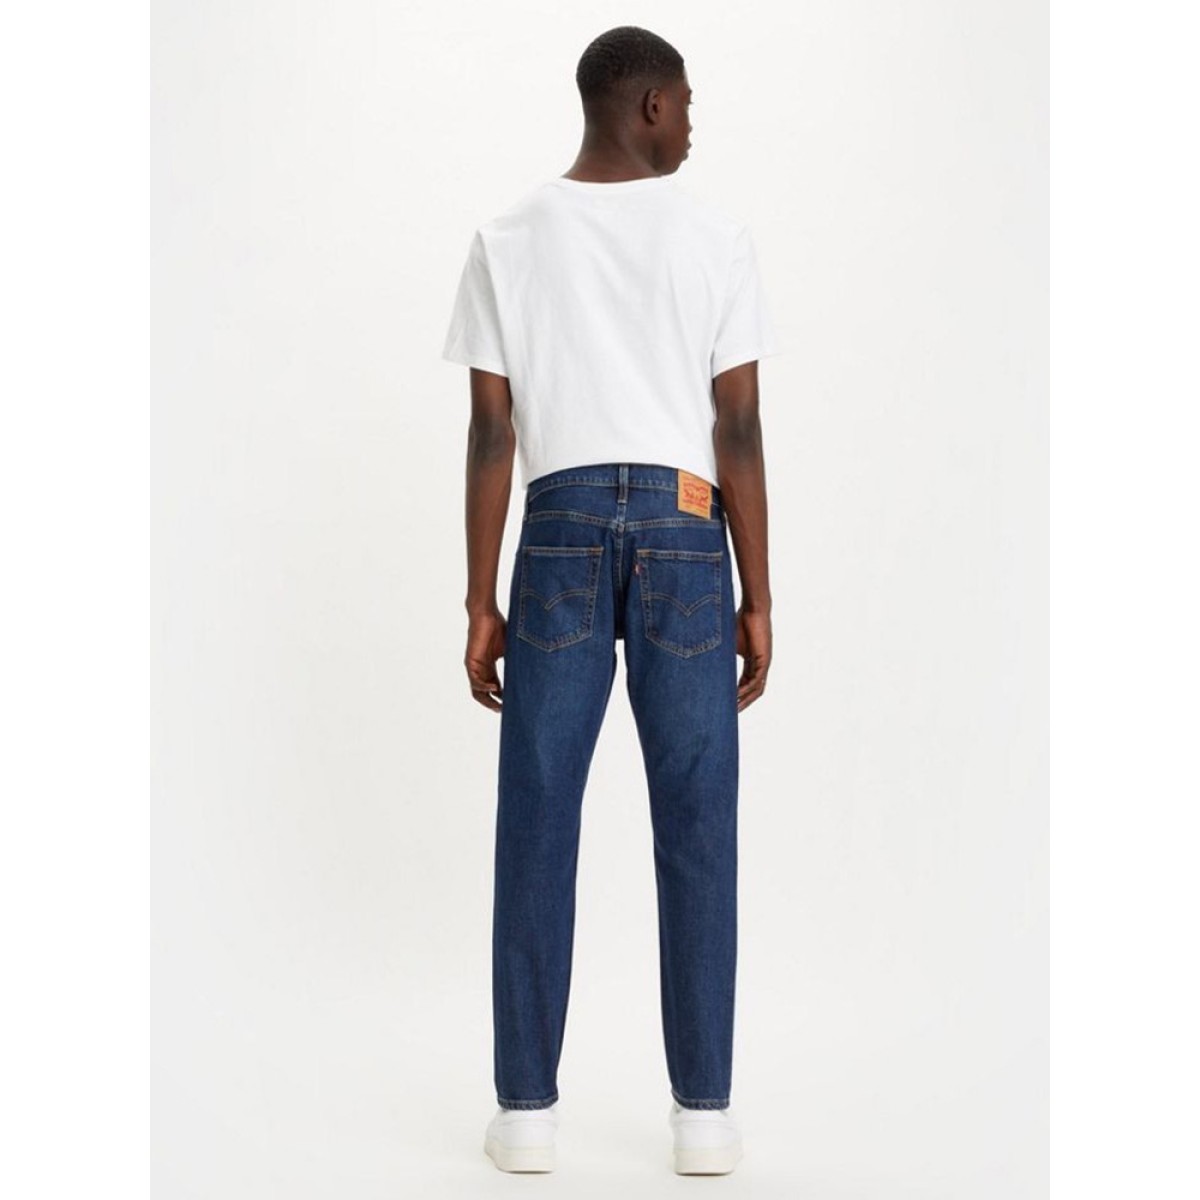 Levi's® 512™ SLIM TAPER - Jeans Tapered Fit - medium indigo worn